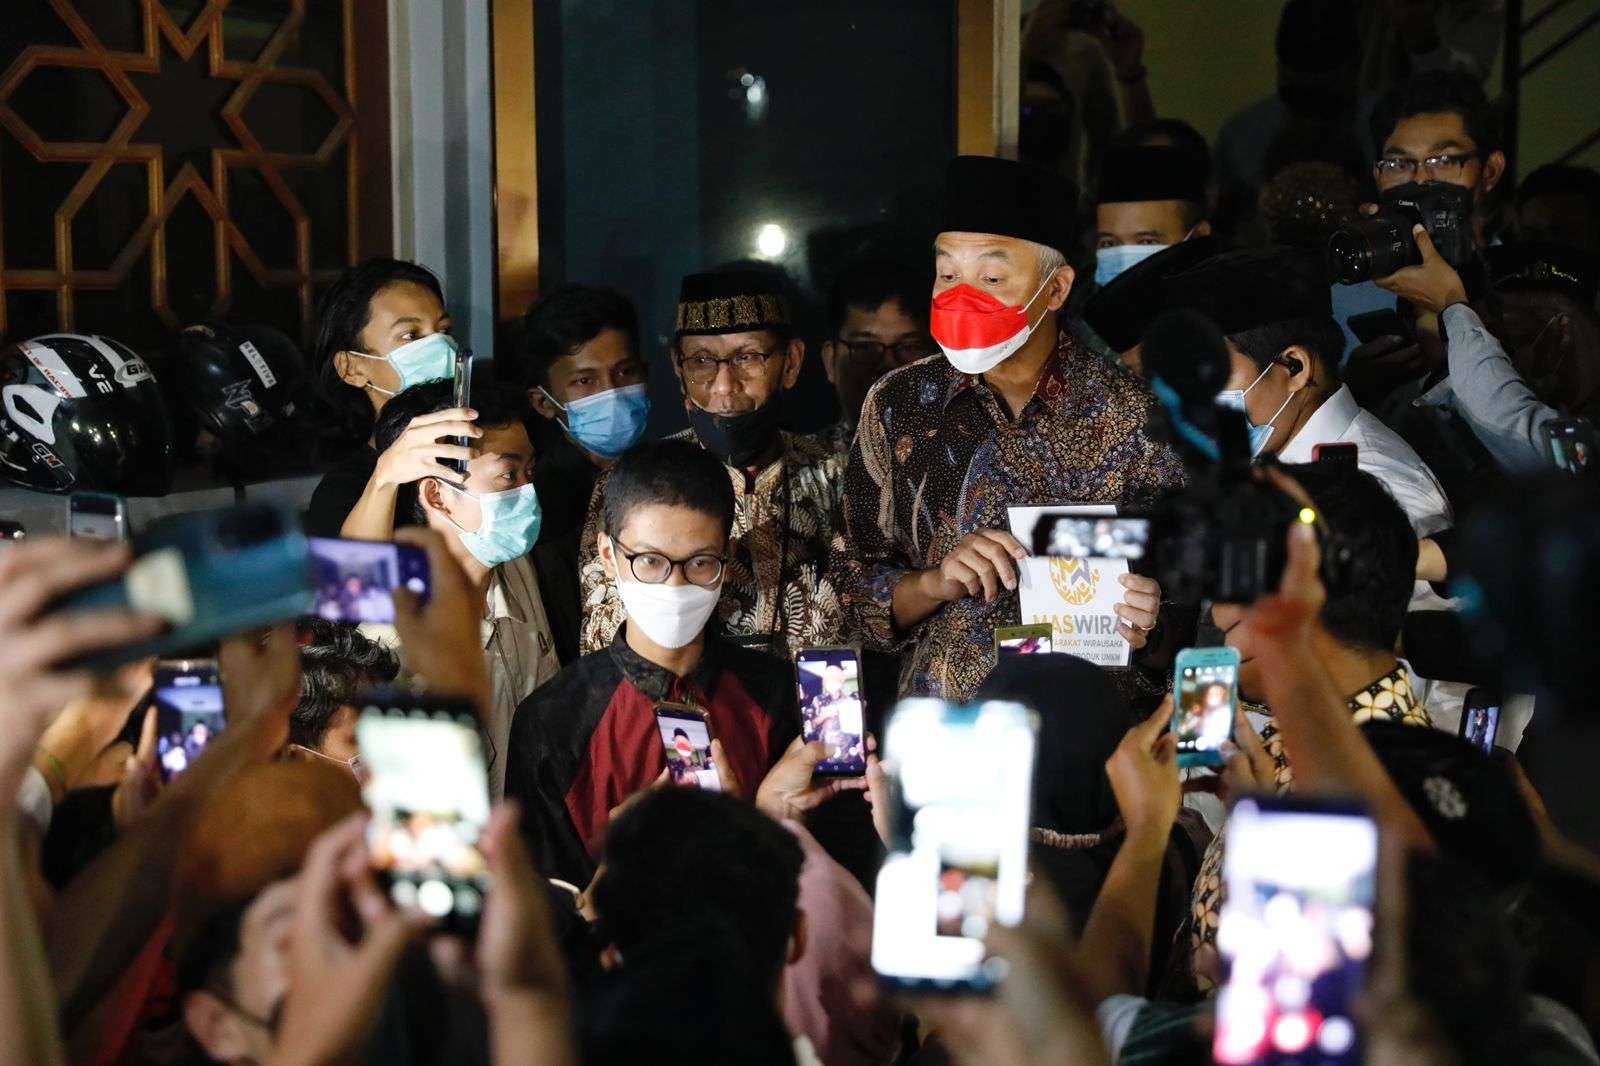 Gubernur Jawa Tengah Ganjar Pranowo saat dikerubuti jemaah Masjid UGM minta foto bareng. (Foto: Istimewa)